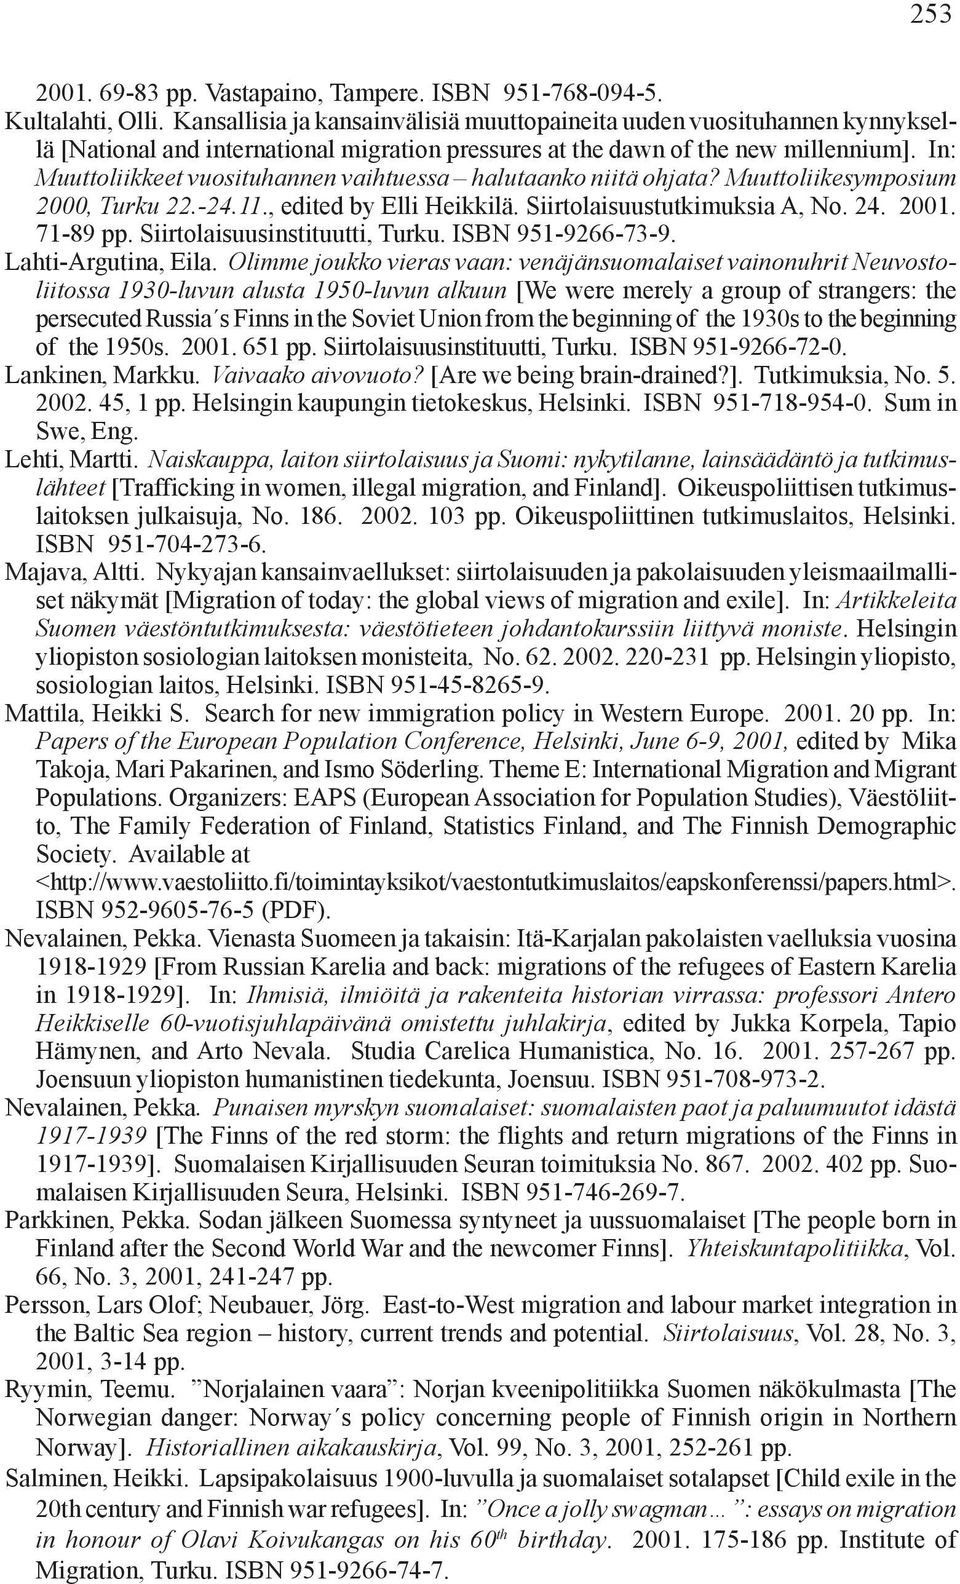 In: Muuttoliikkeet vuosituhannen vaihtuessa halutaanko niitä ohjata? Muuttoliikesymposium 2000, Turku 22.-24.11., edited by Elli Heikkilä. Siirtolaisuustutkimuksia A, No. 24. 2001. 71-89 pp.